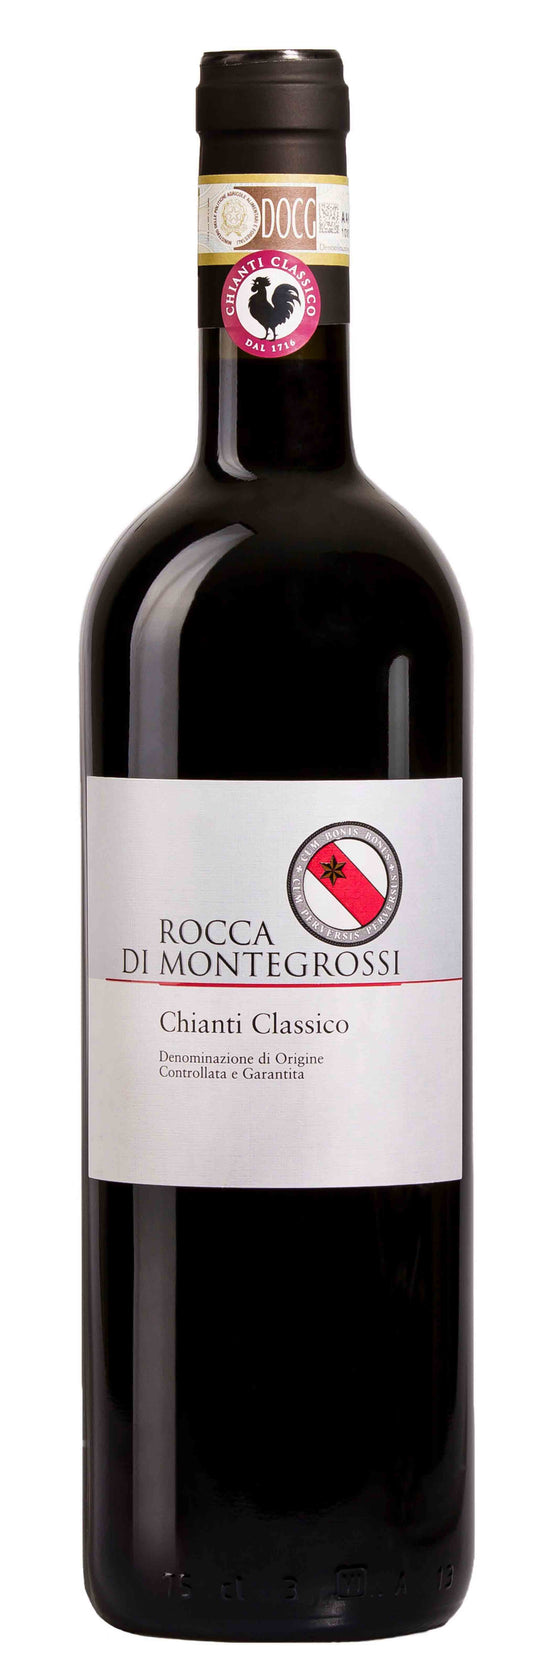 2019 Rocca di Montegrossi Chianti Classico